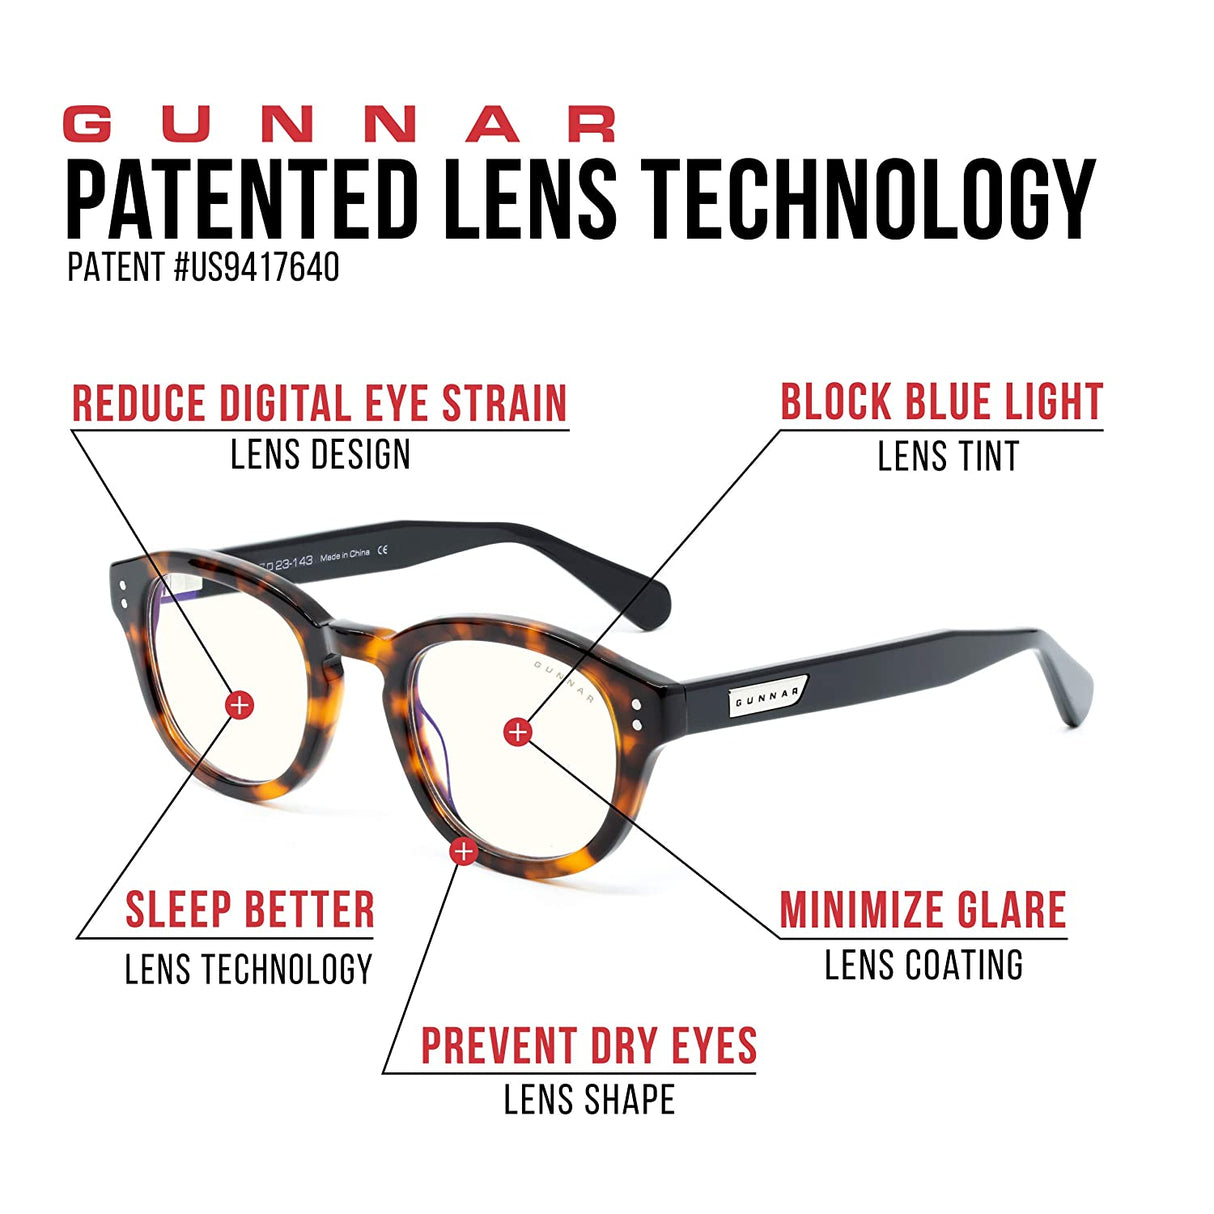 GUNNAR Glasses  The Original Gaming & Computer Glasses